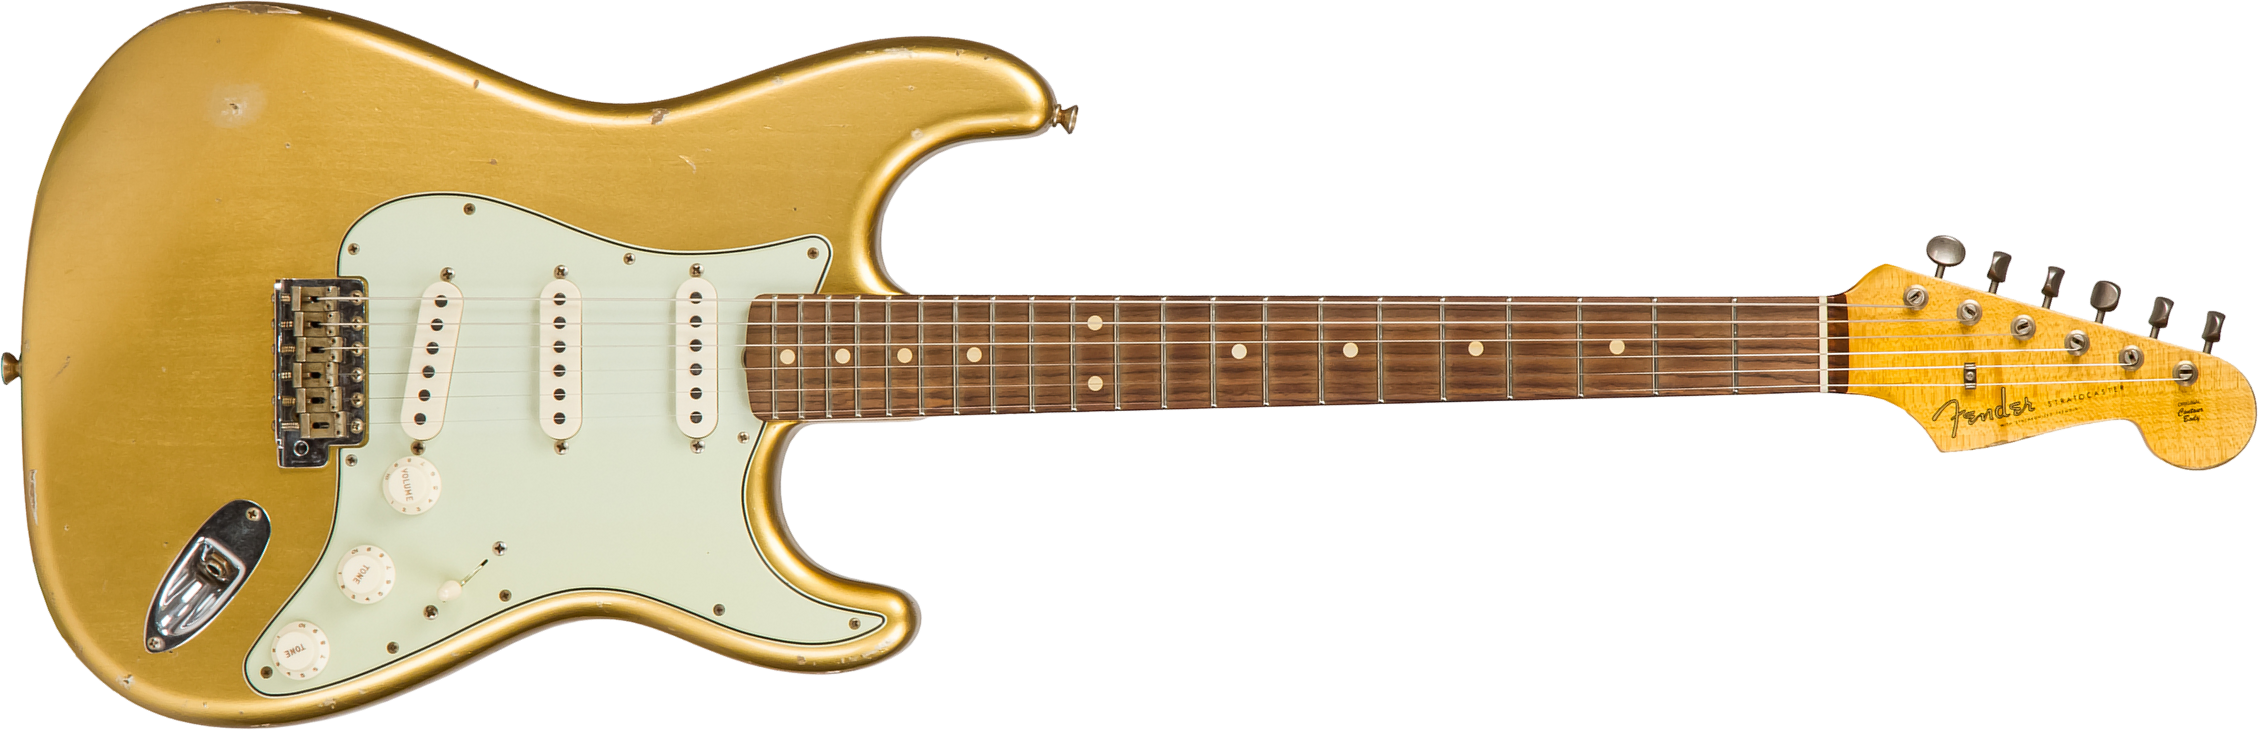 Fender Custom Shop Strat 1960 Rw #cz544406 - Relic Aztec Gold - Elektrische gitaar in Str-vorm - Main picture